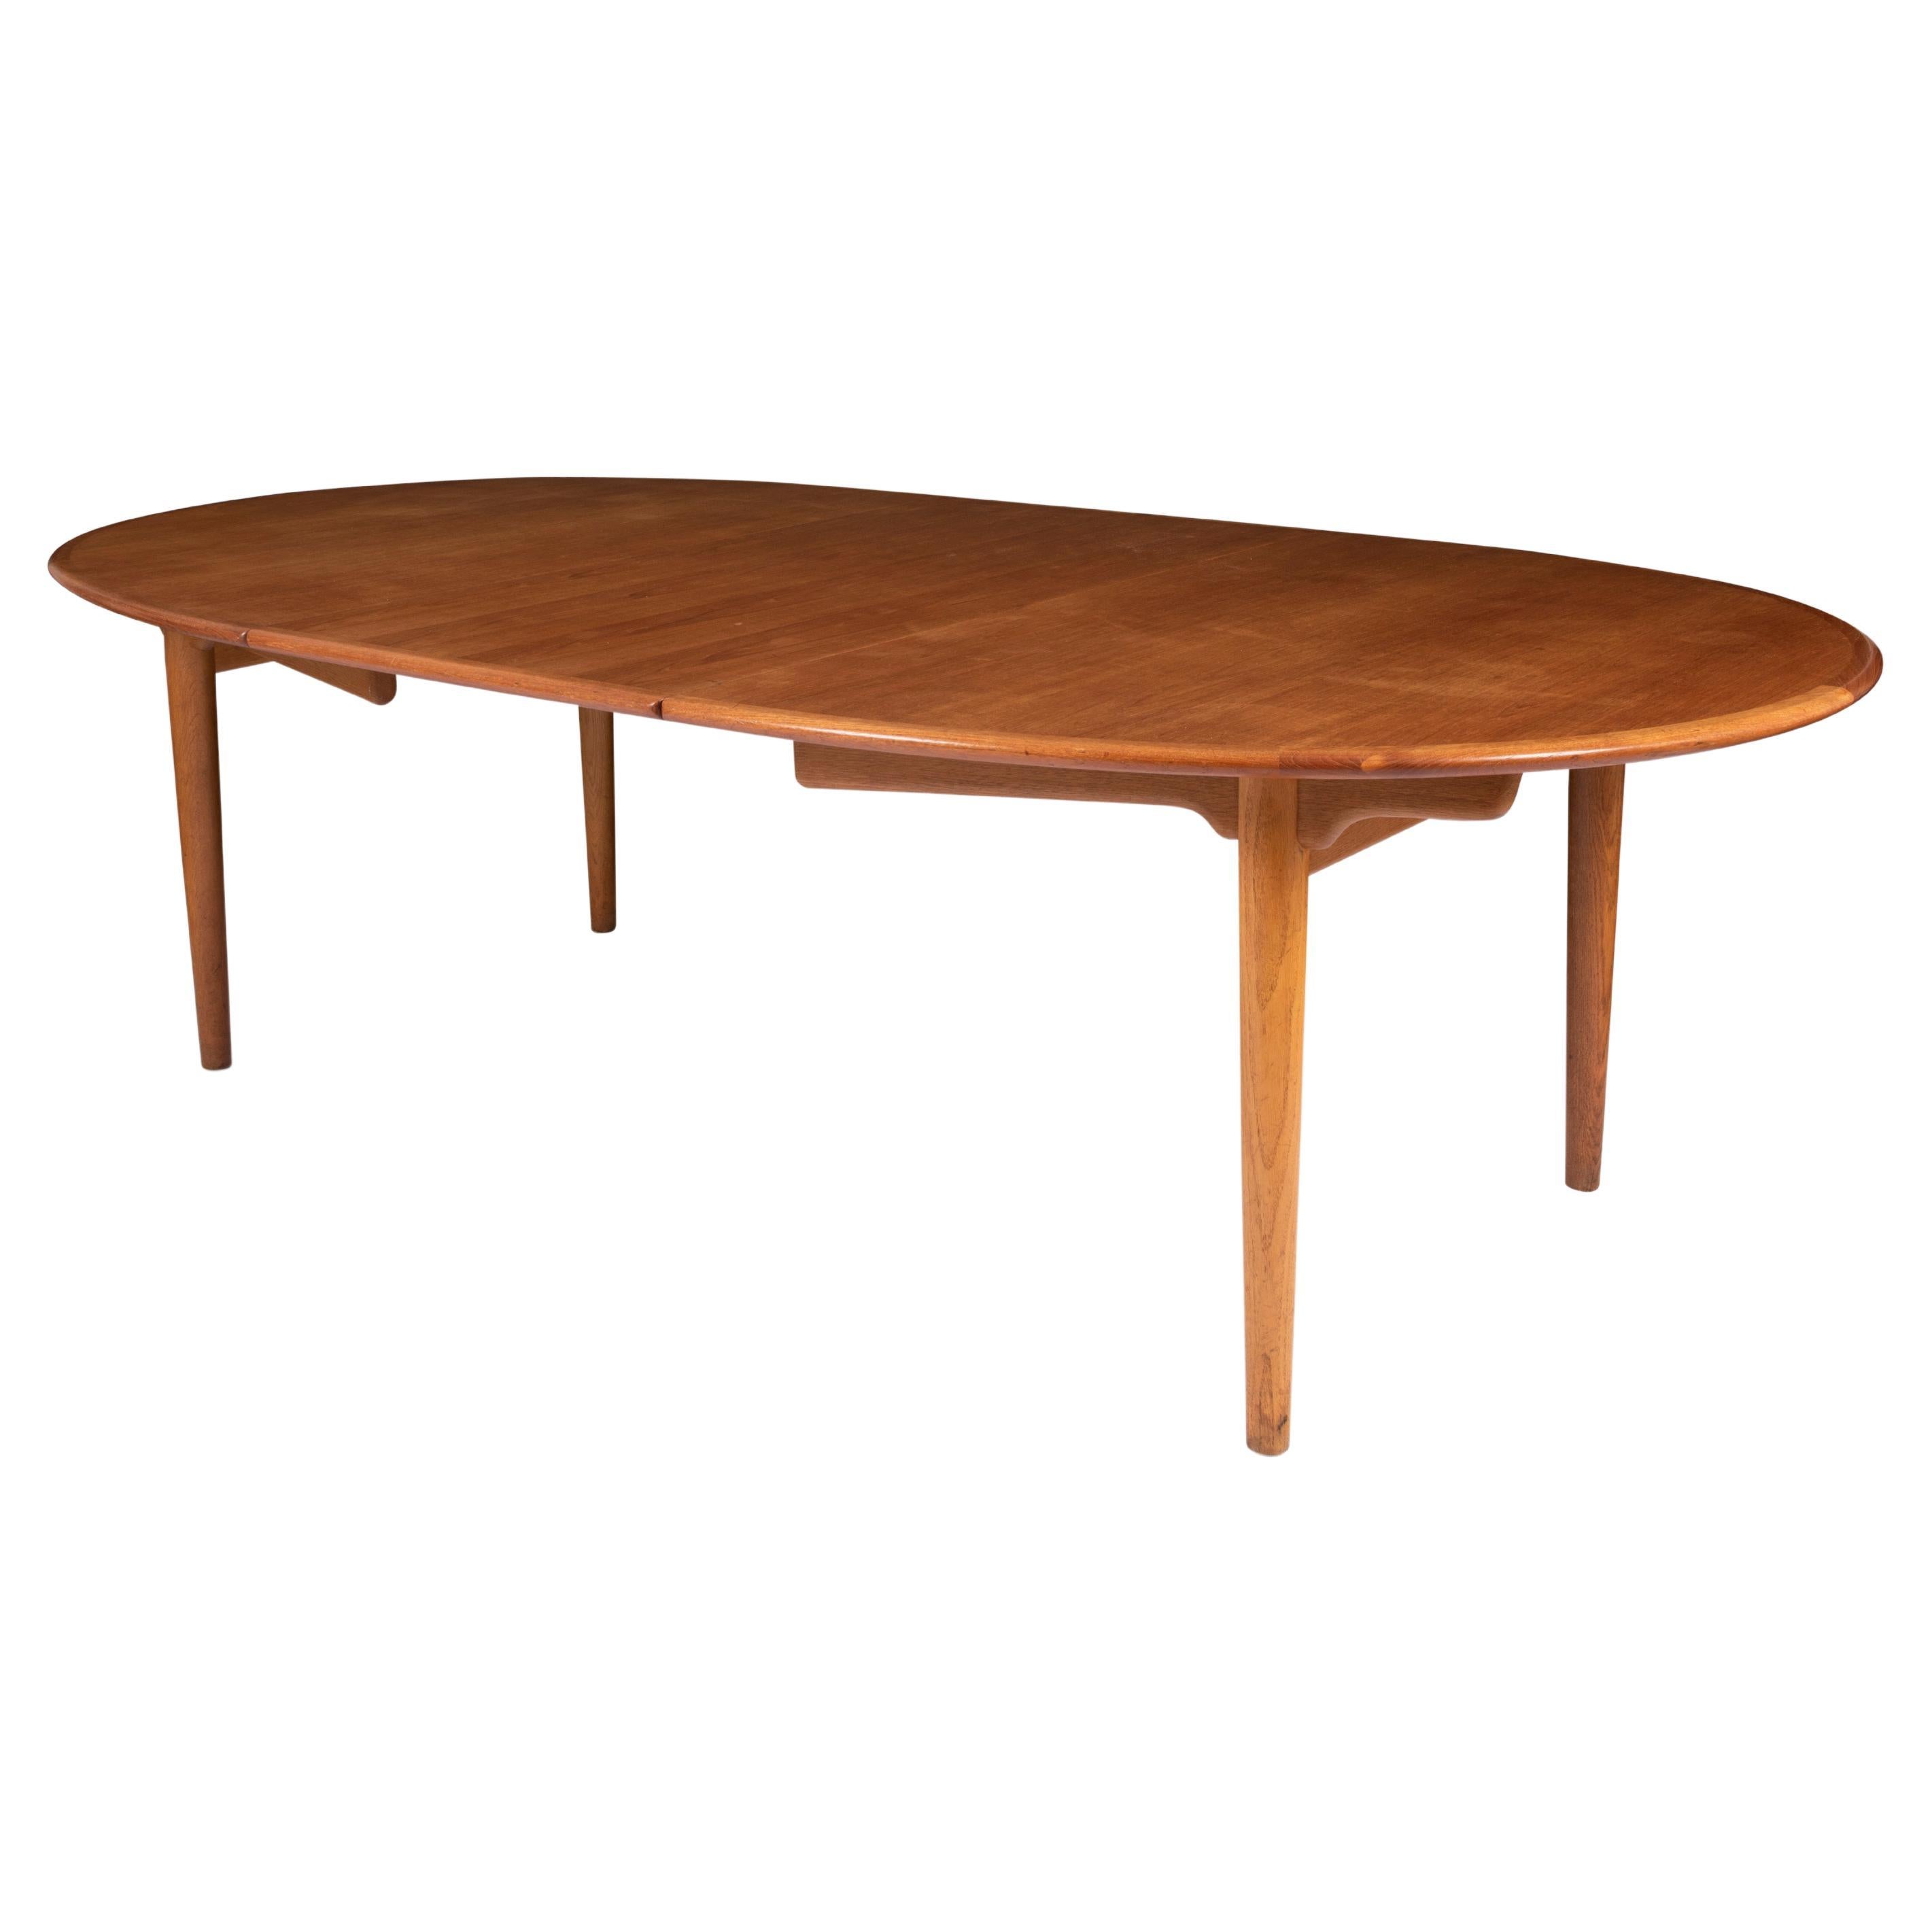 Ovaler Esstisch aus Eiche, Modell JH567 von Hans Wegner, 1960er Jahre